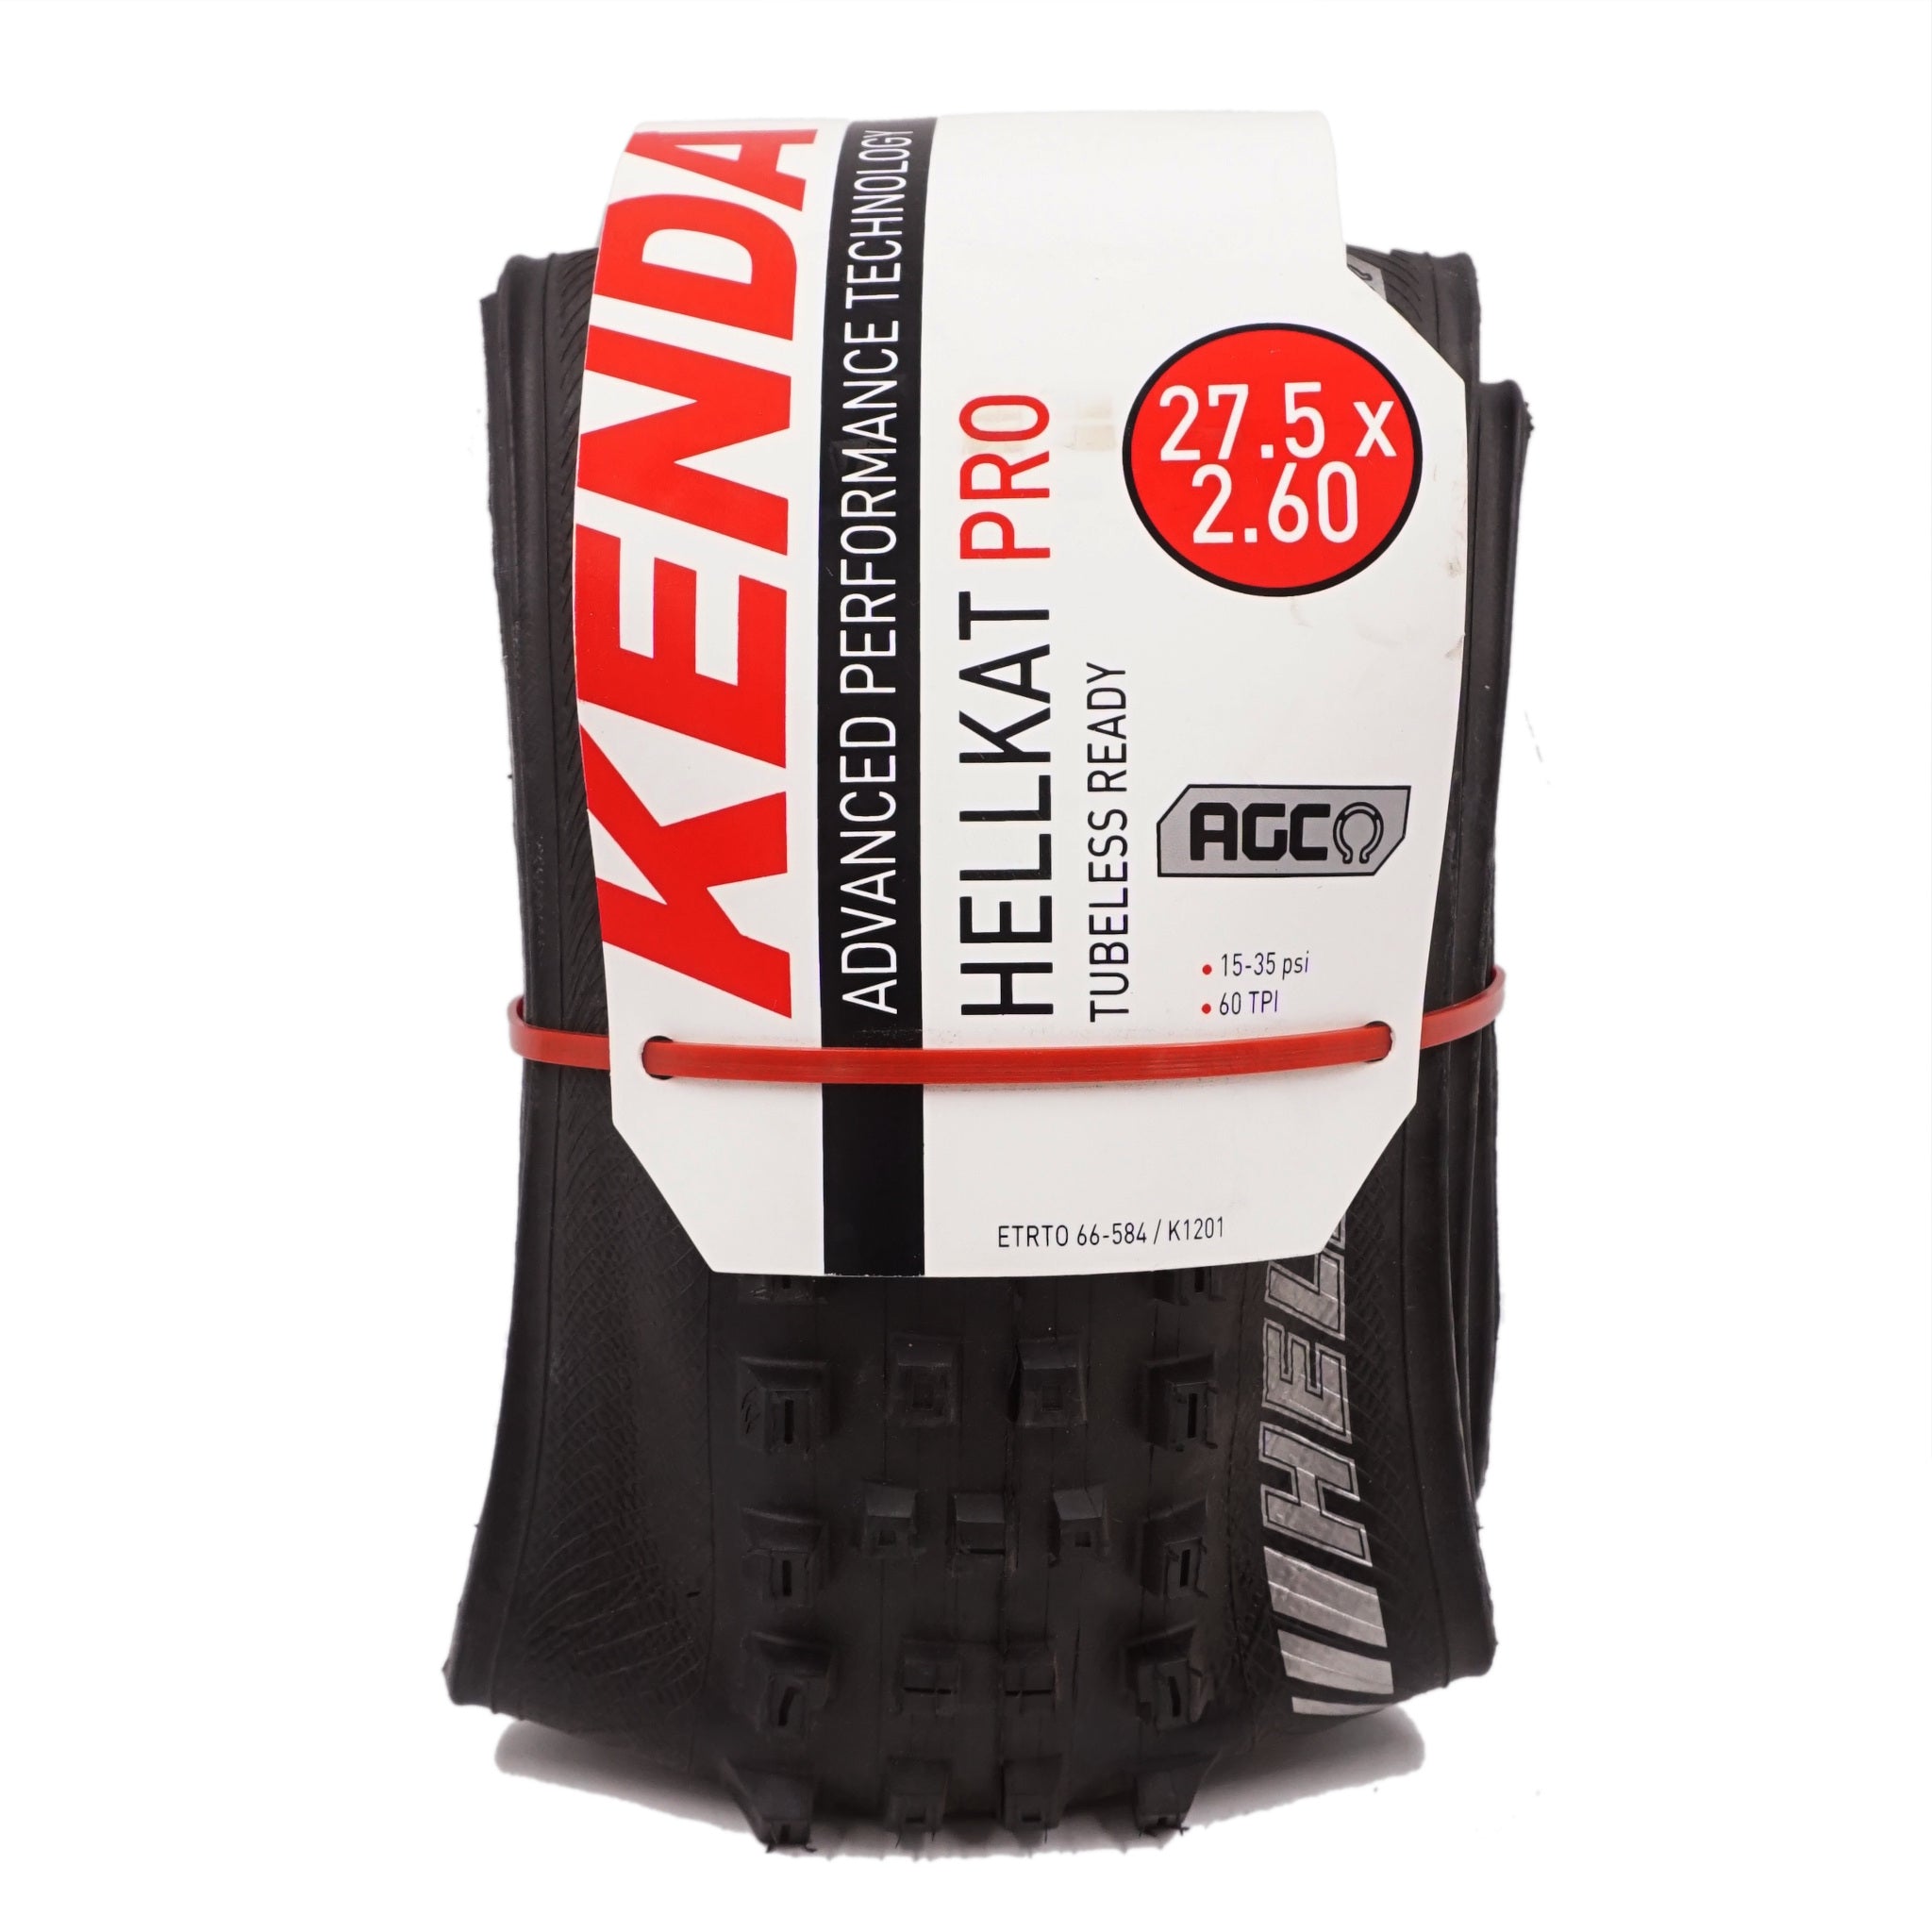 Kenda K1201 Hellkat Pro 27.5x2.6 Tire AGC TPI: 60 - The Bikesmiths